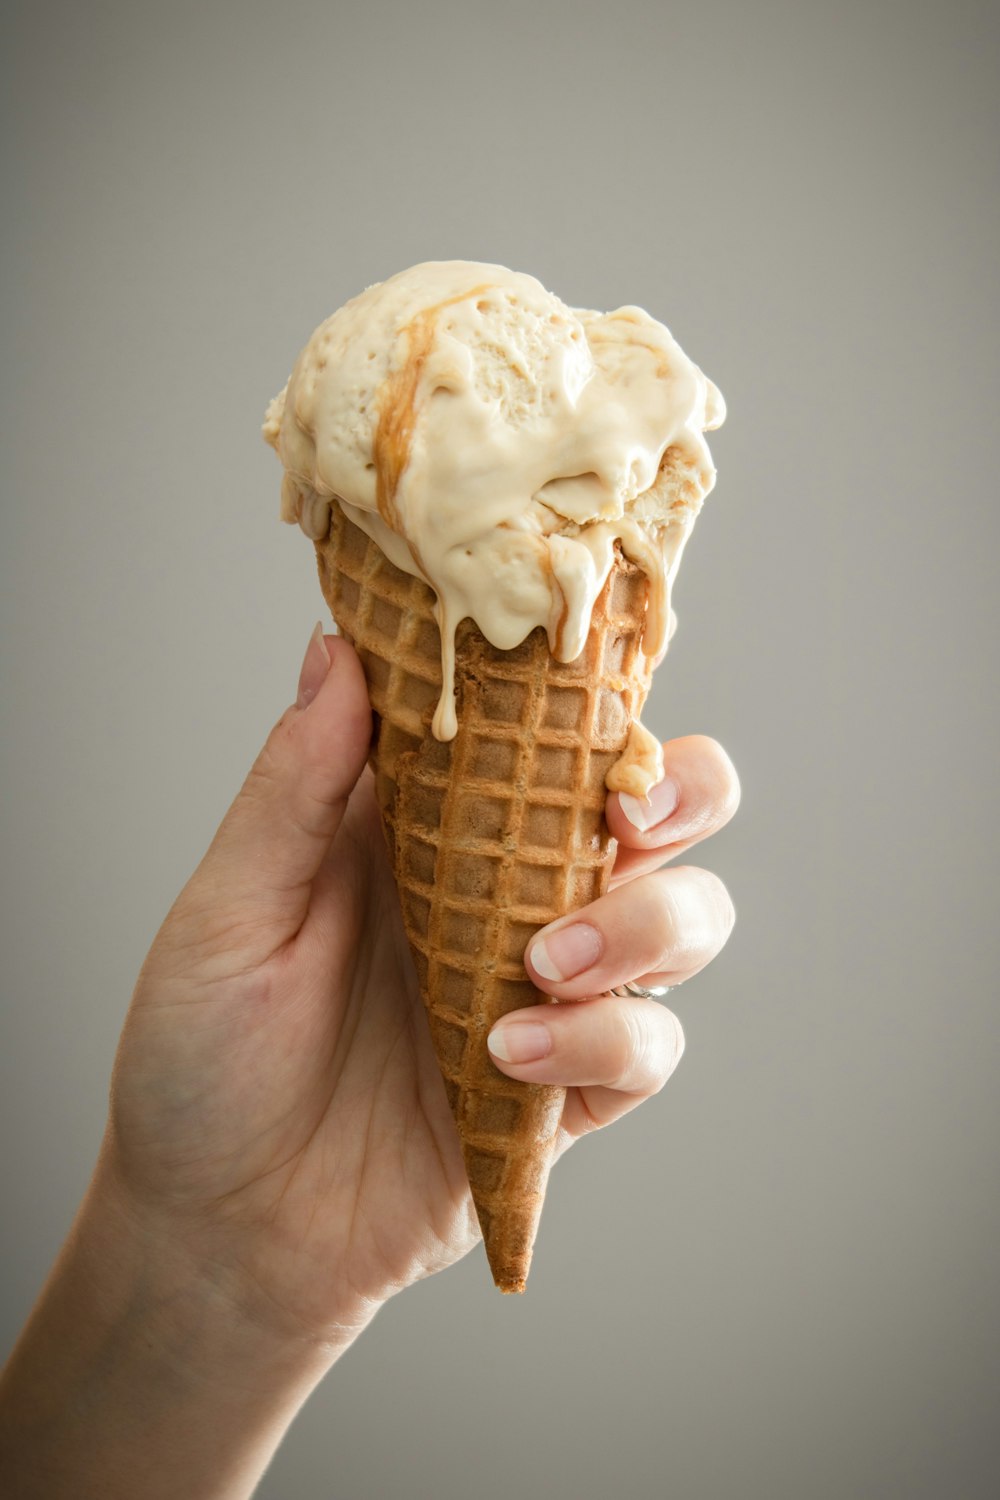 茶色の円錐形に白いアイスクリーム